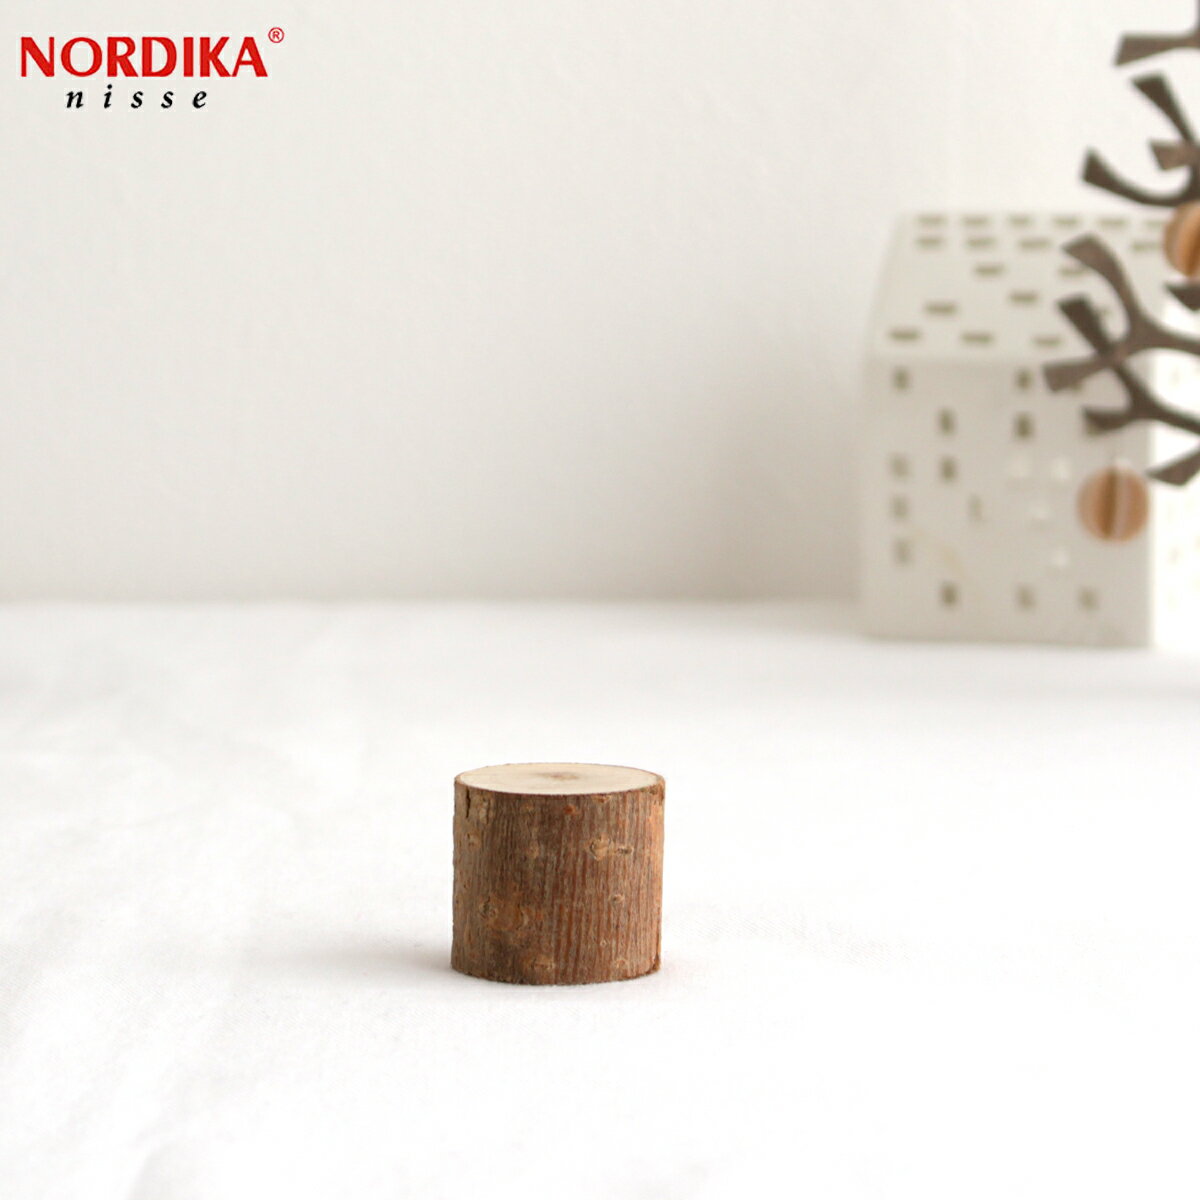 ノルディカニッセ 丸太台 お座り人形用 台座 NORDIKA nisse クリスマス 雑貨 木製 人形 北欧 NRD120282